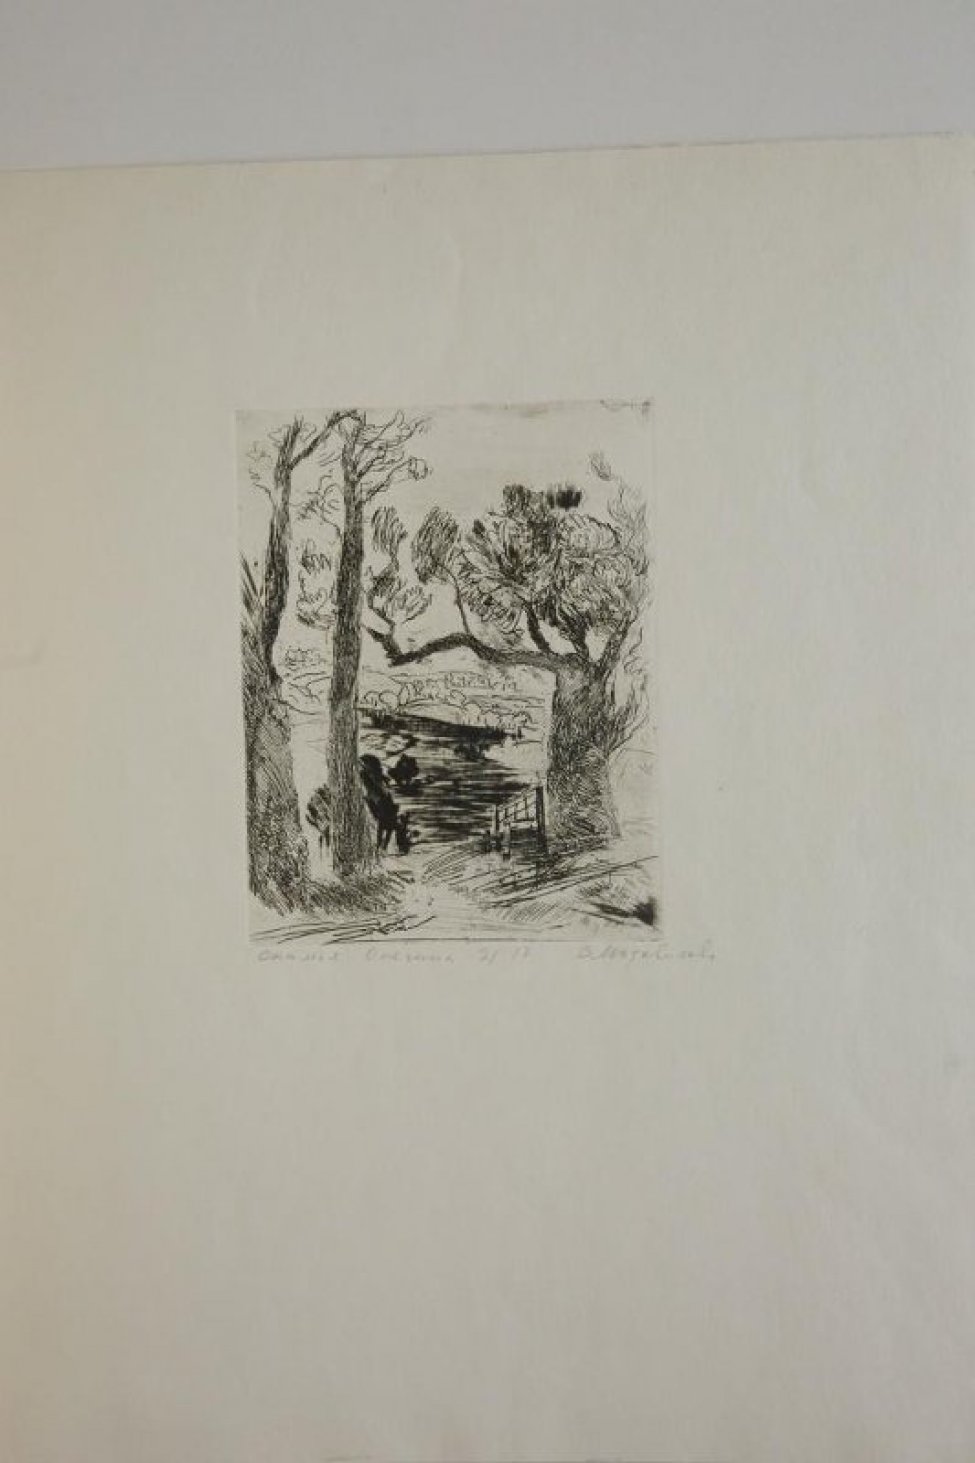 Изображен пейзаж с рекой. На первом плане слева - стволы двух деревьев, справа - дерево с раскидистой кроной, под деревом скамья.